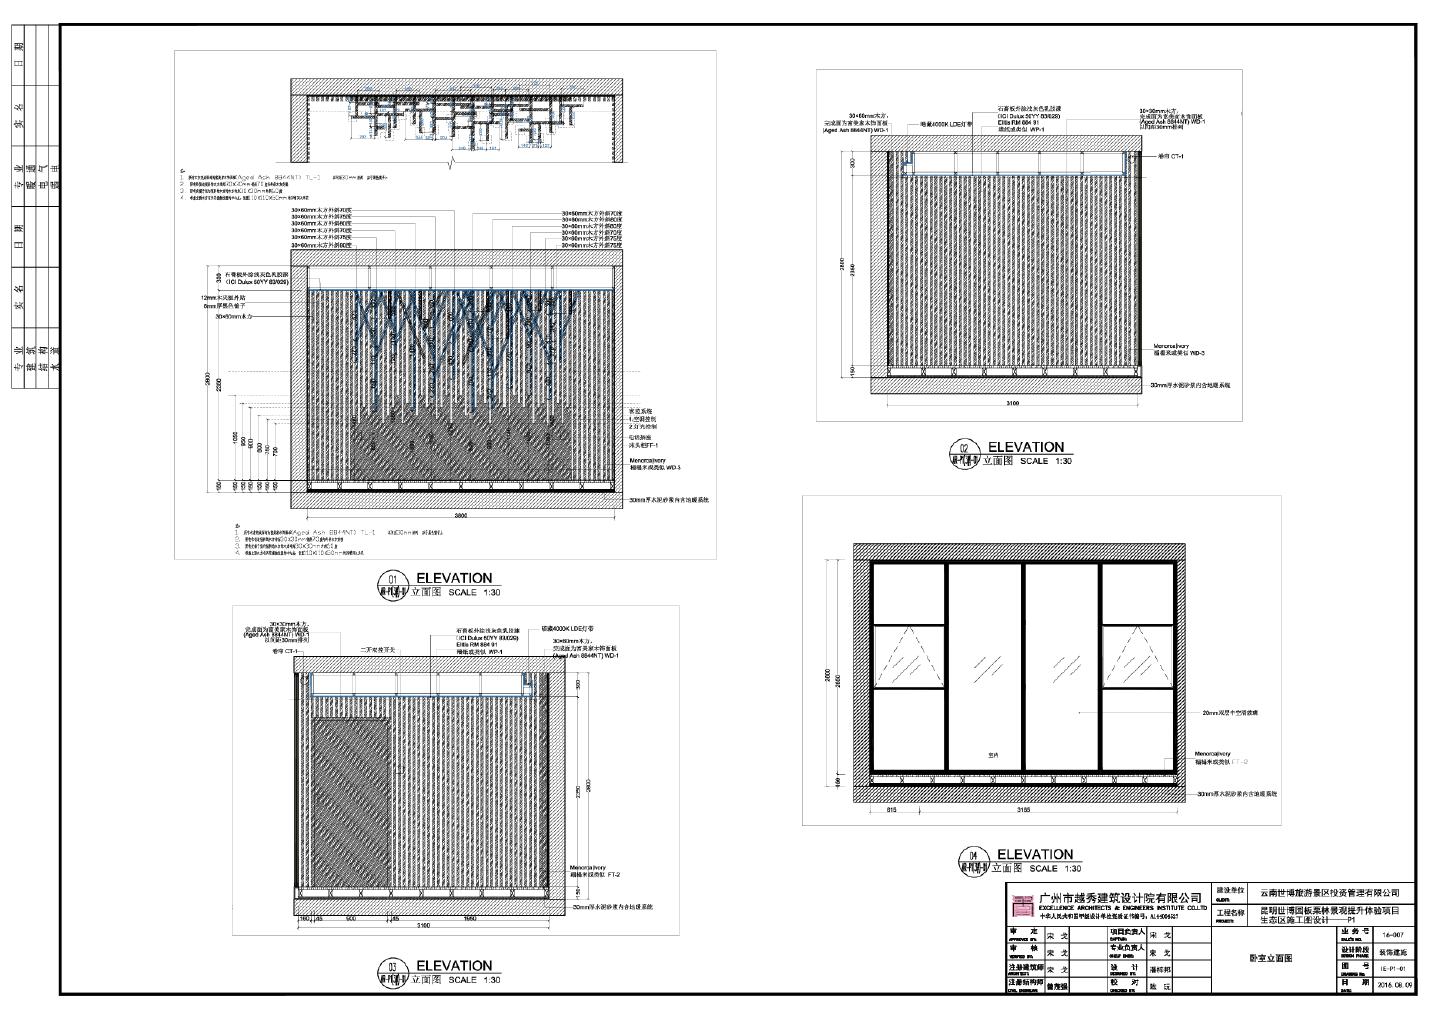 昆明世博园板栗林景观提升体验项目生态区施工图设计-P1 卧室立面CAD图.dwg